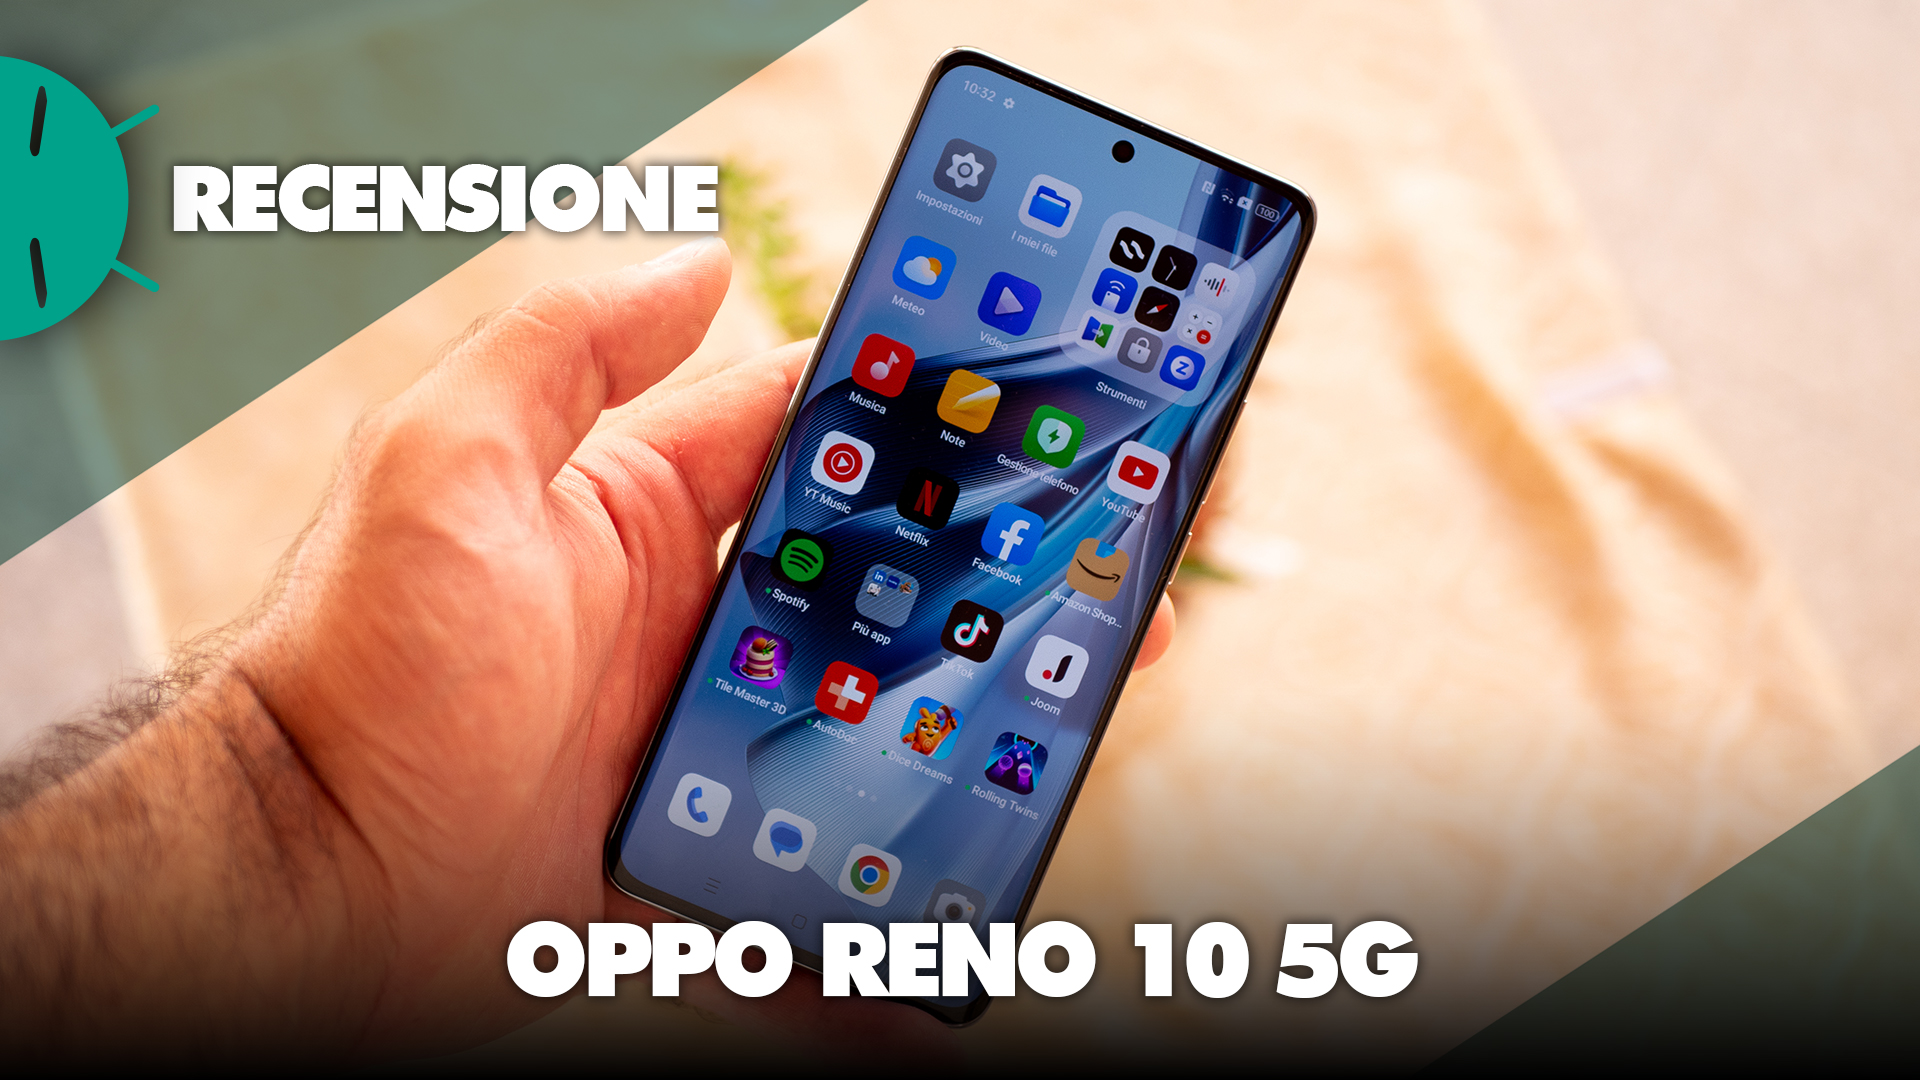 Revisión de OPPO Reno 10 5G: ¡el más INVALUADO! - GizChina.it